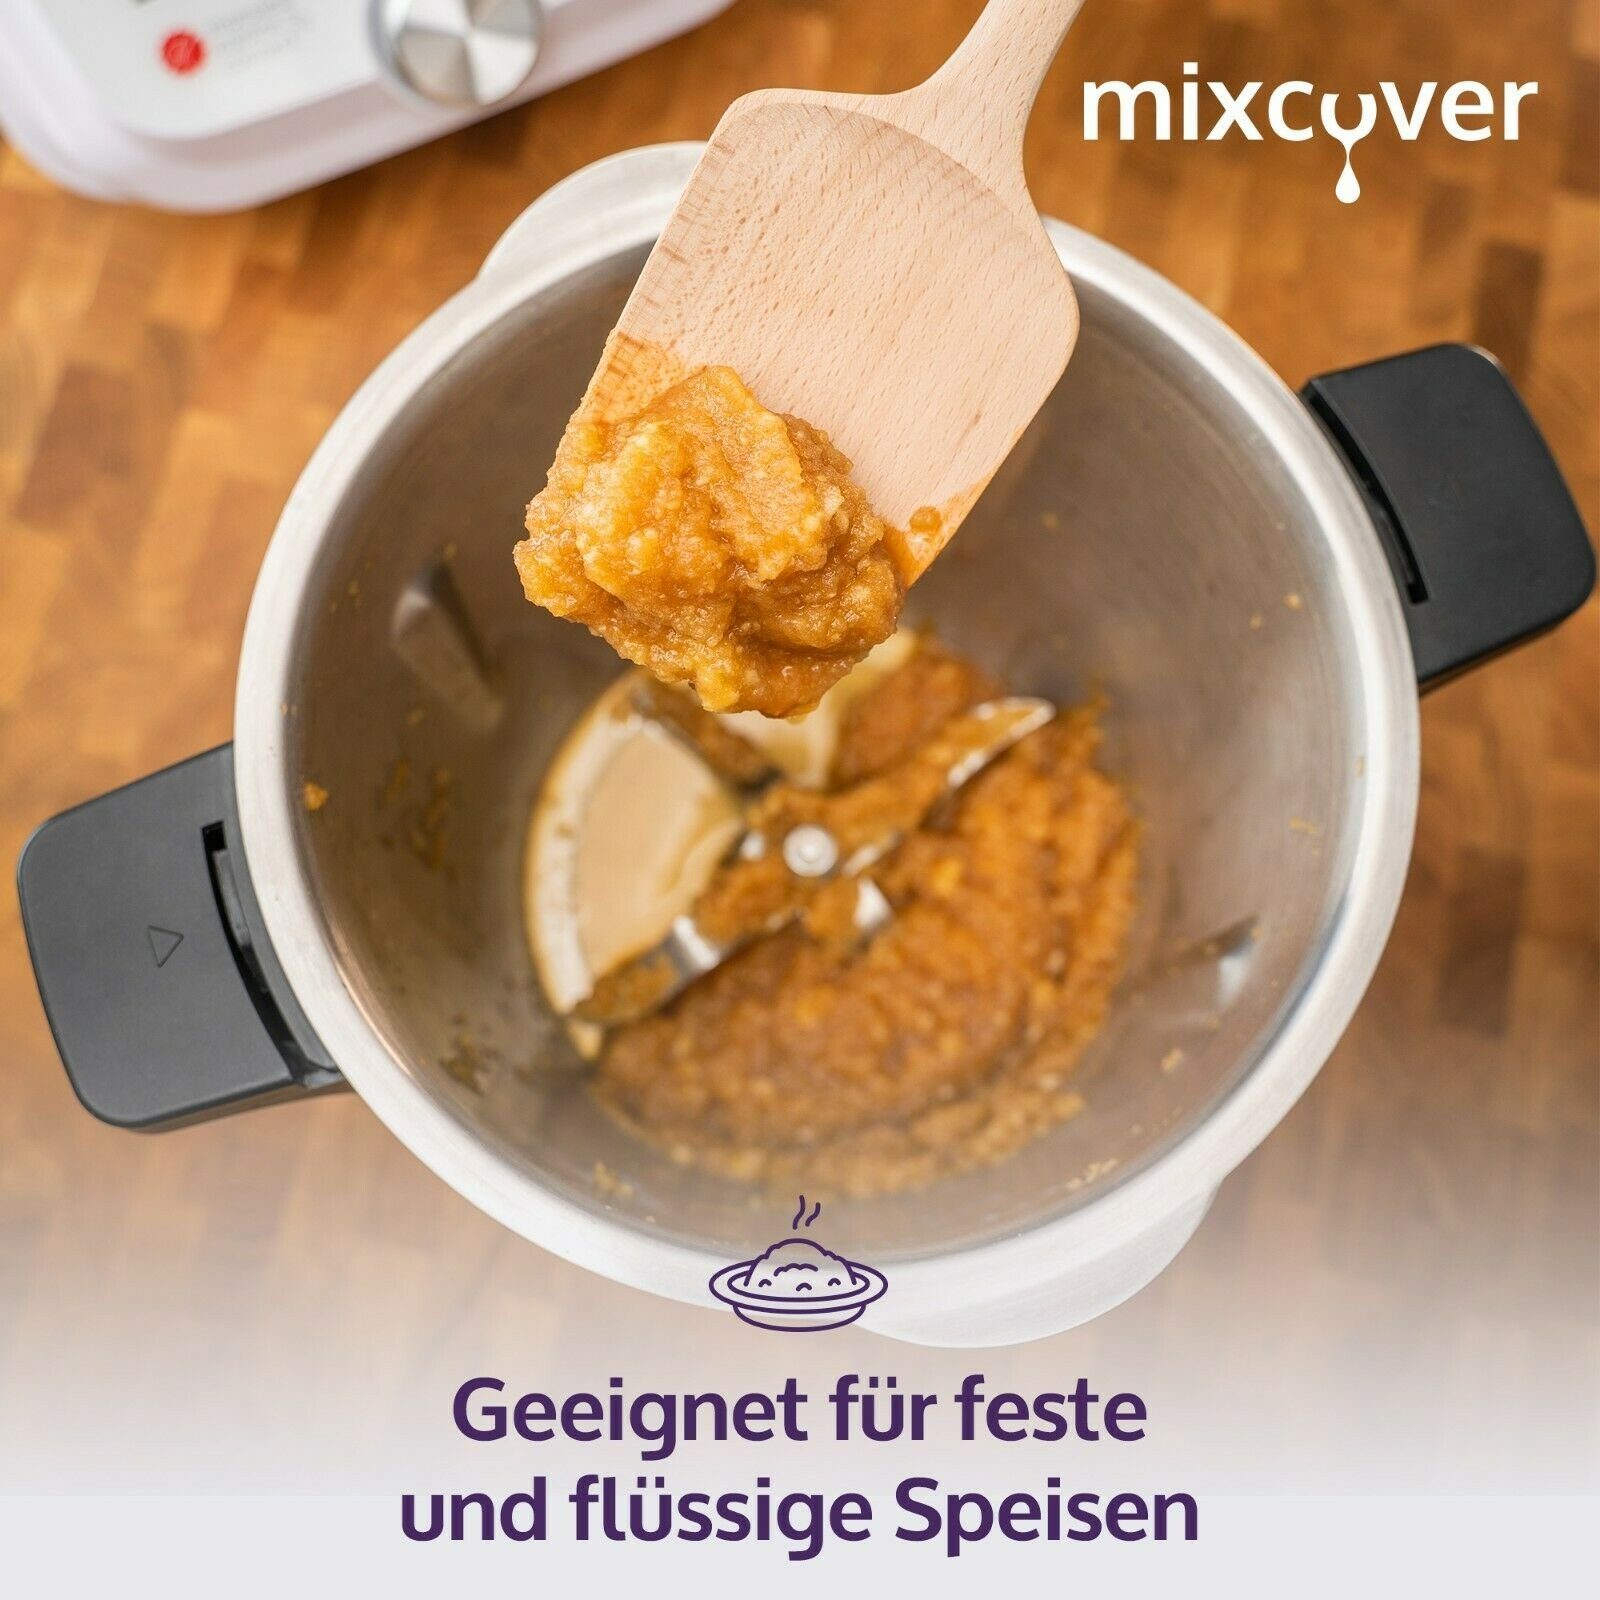 Mixcover Küchenmaschinen-Adapter mixcover Nachhaltiger Holzspatel Monsieur mit Smart Zubehör Gravur & Cuisine Connect